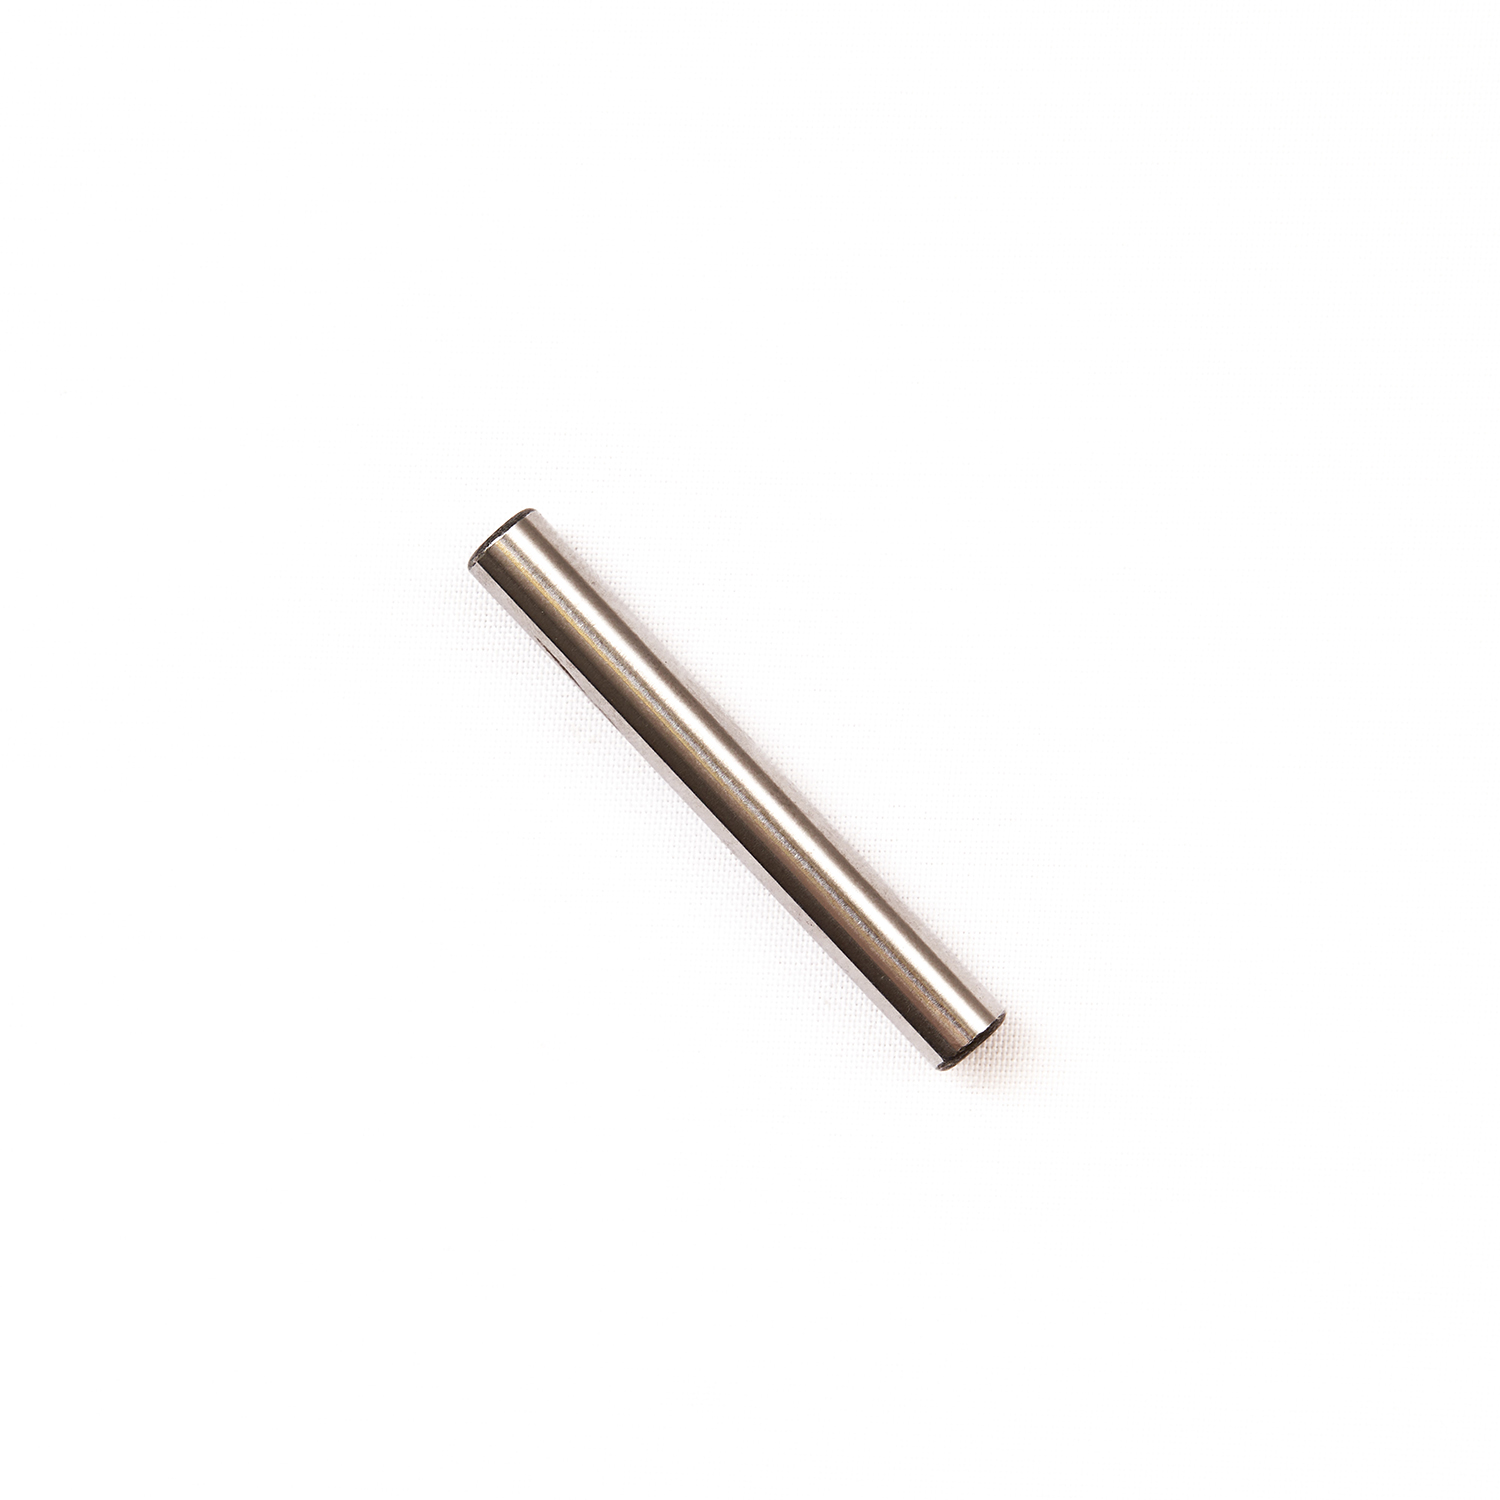 Штифт молотка ( Hammer pin ) RT-5565 поз.13